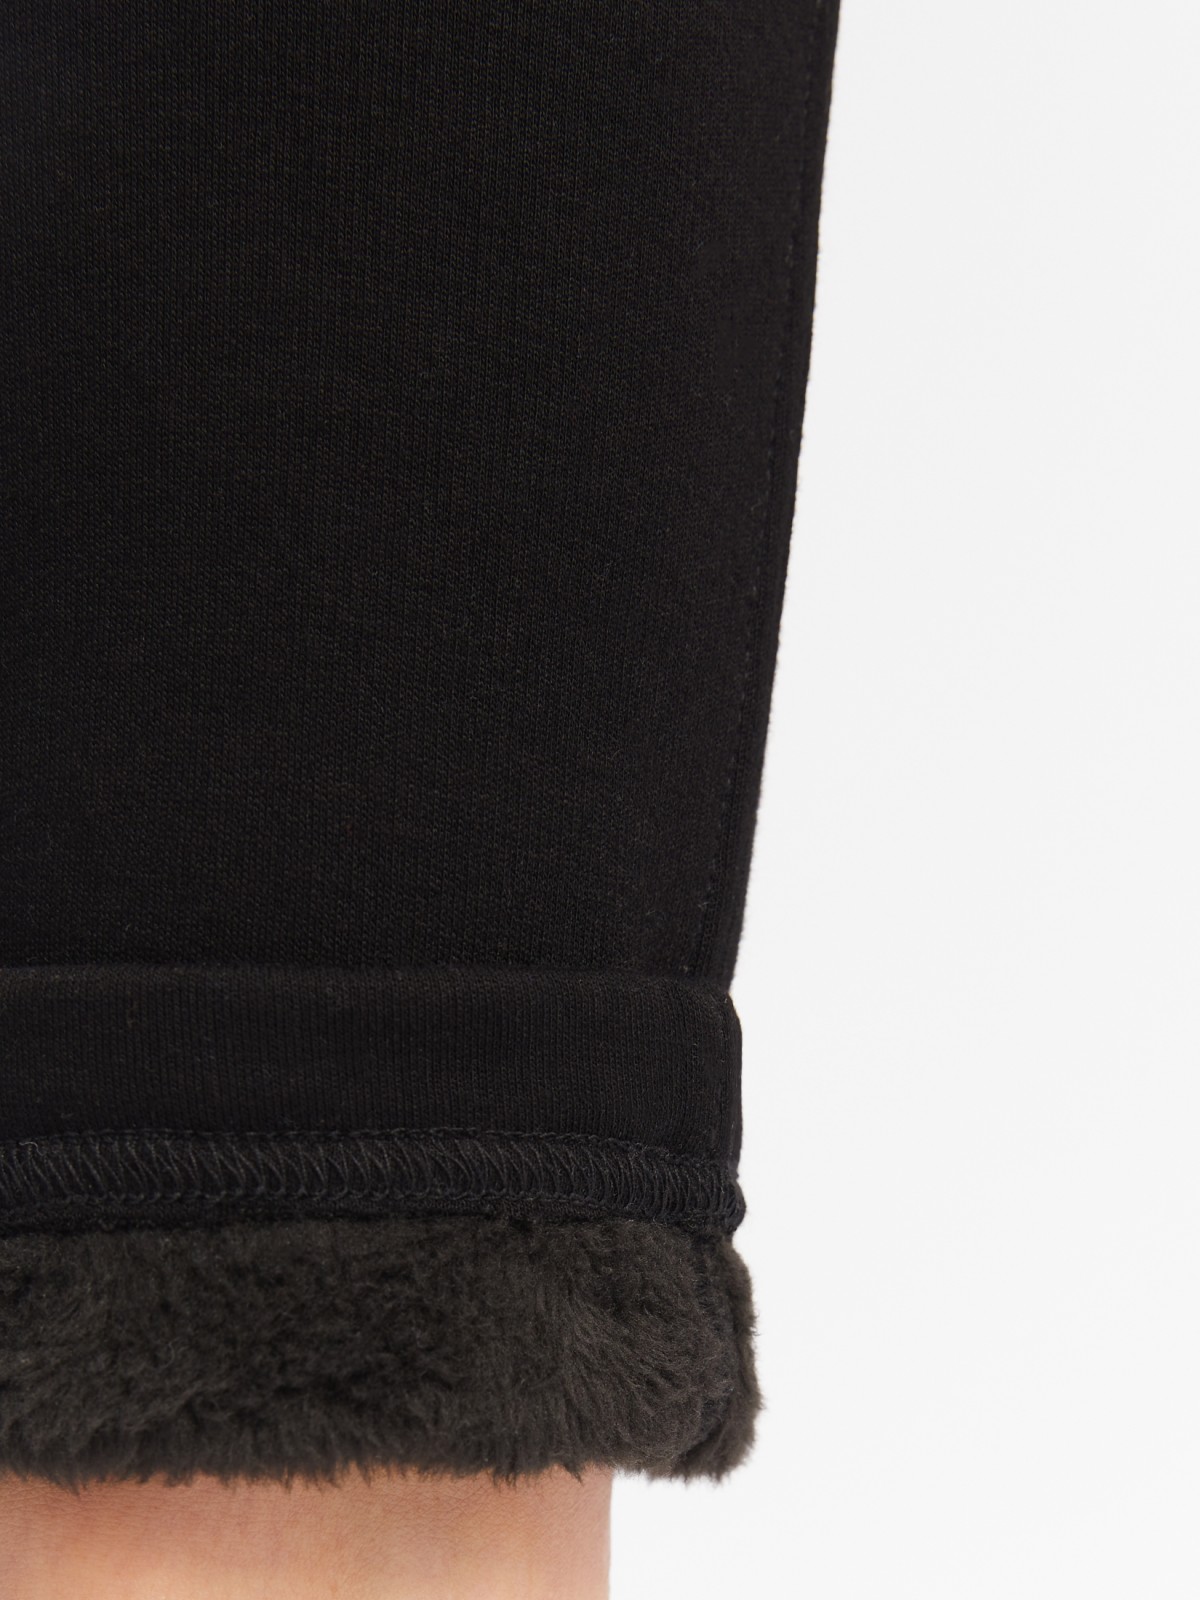 Утеплённые легинсы с начёсом и средней посадкой на талии zolla 02342769Y051, цвет черный, размер S - фото 6